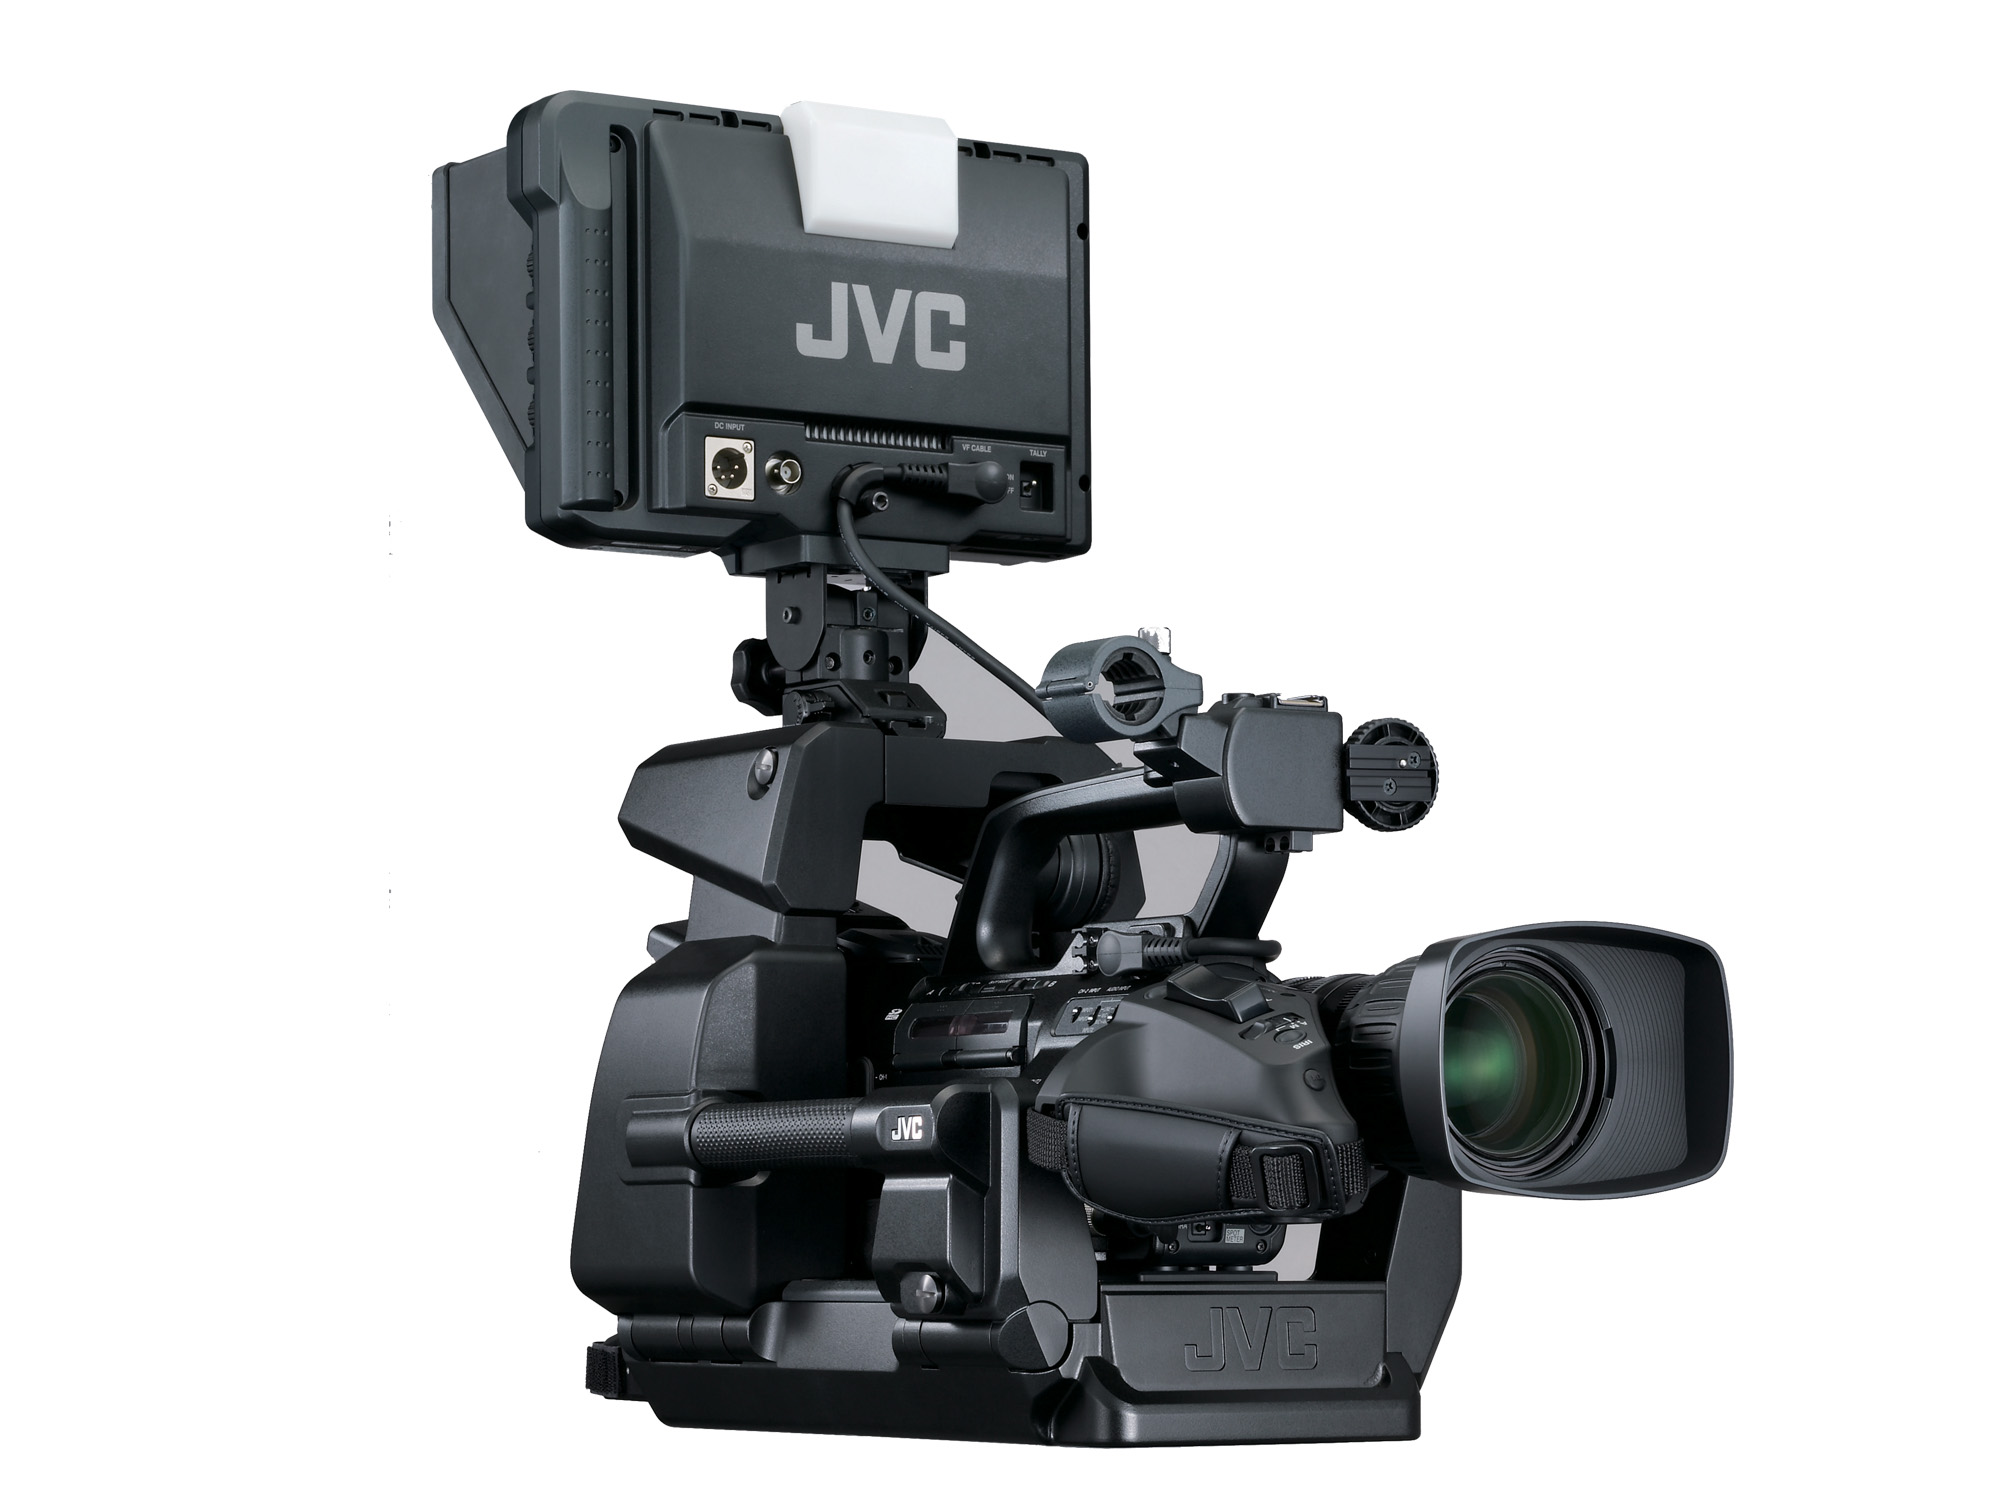 JVC GY-HM790U